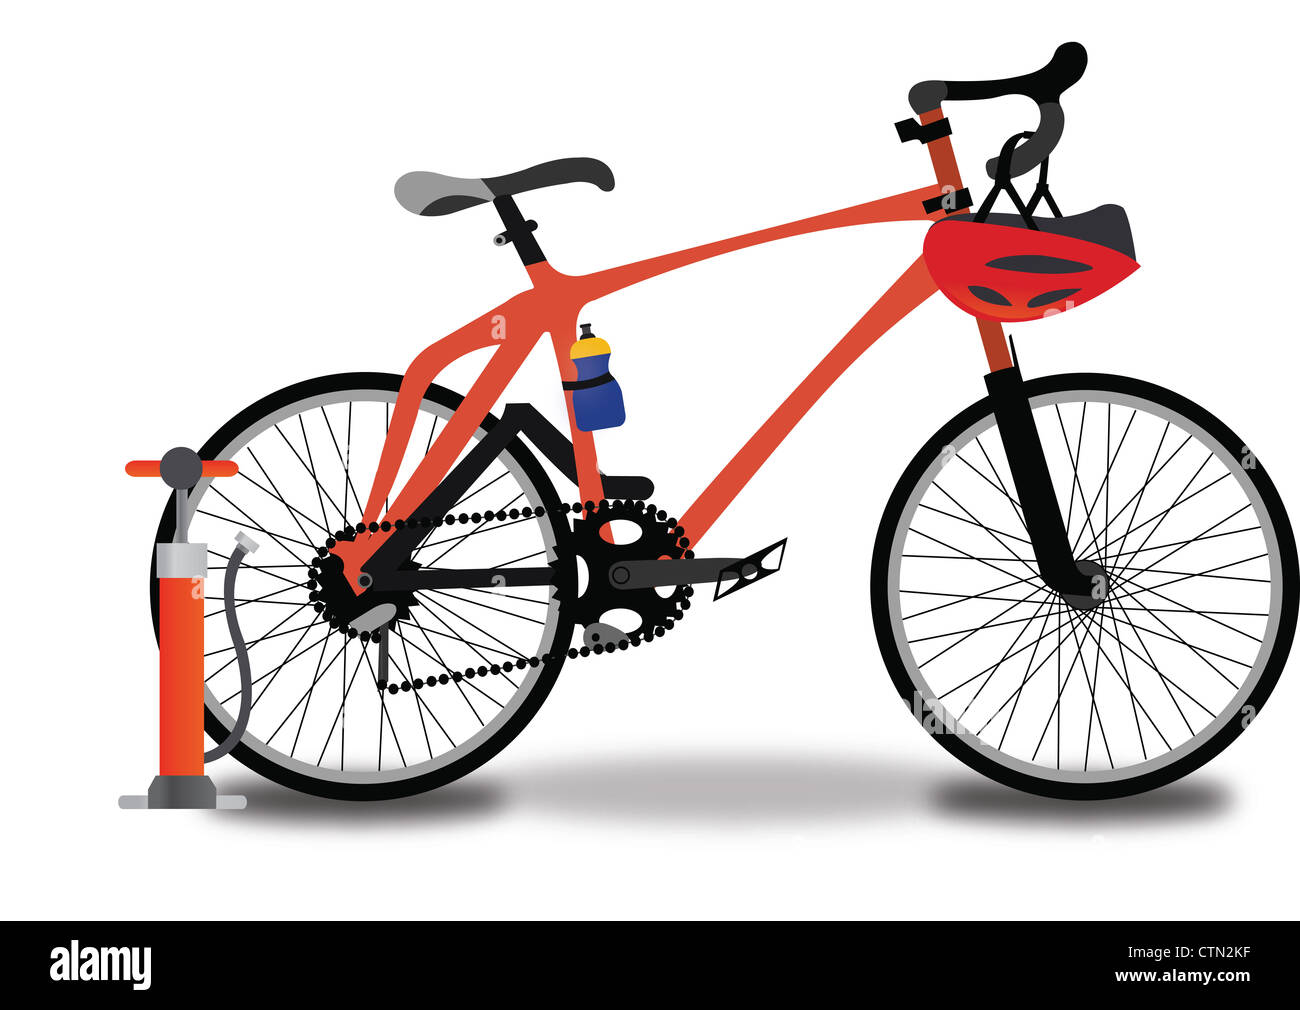 Rennen, Fahrrad, rot und schwarz, mit Reifen zu Pumpen, Helm und Trinkflasche, Vektor-illustration Stockfoto